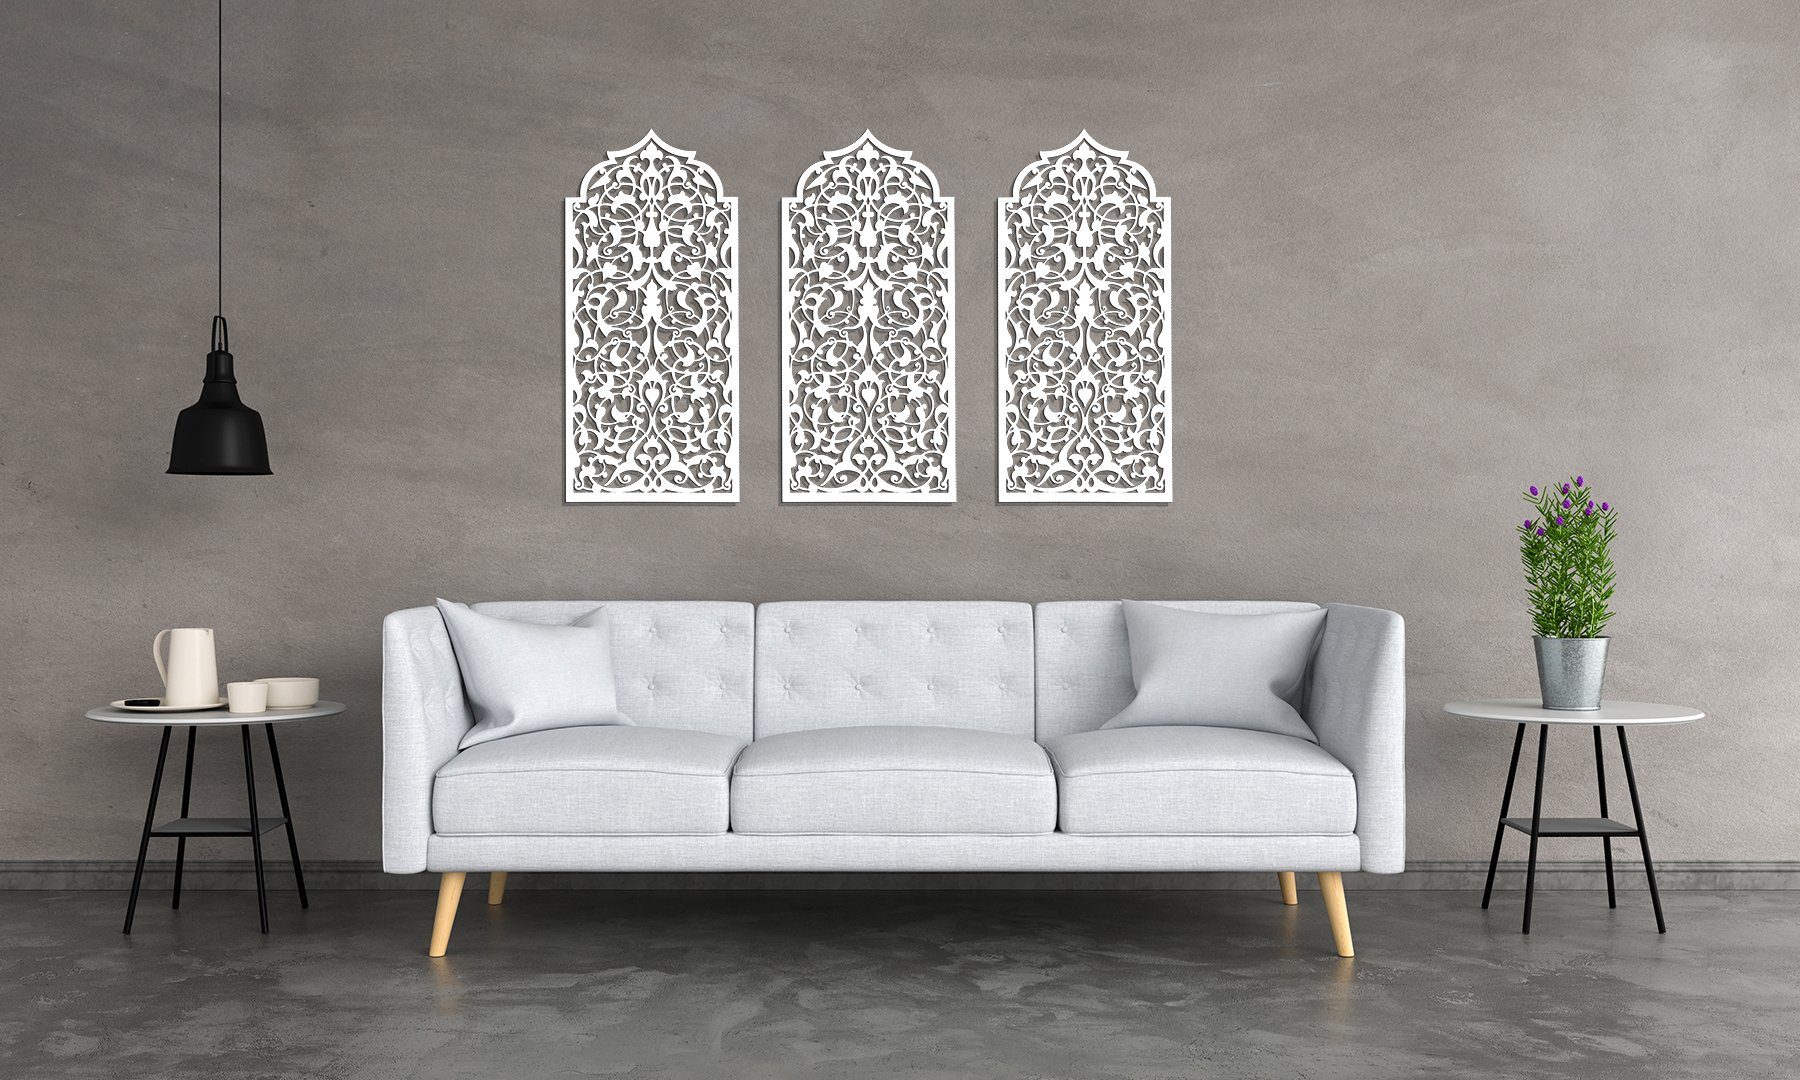 ORNAMENTI Mehrteilige Bilder 3D grosse Wanddeko, Marokkanisches Fenster, Holzbild, Handwerk